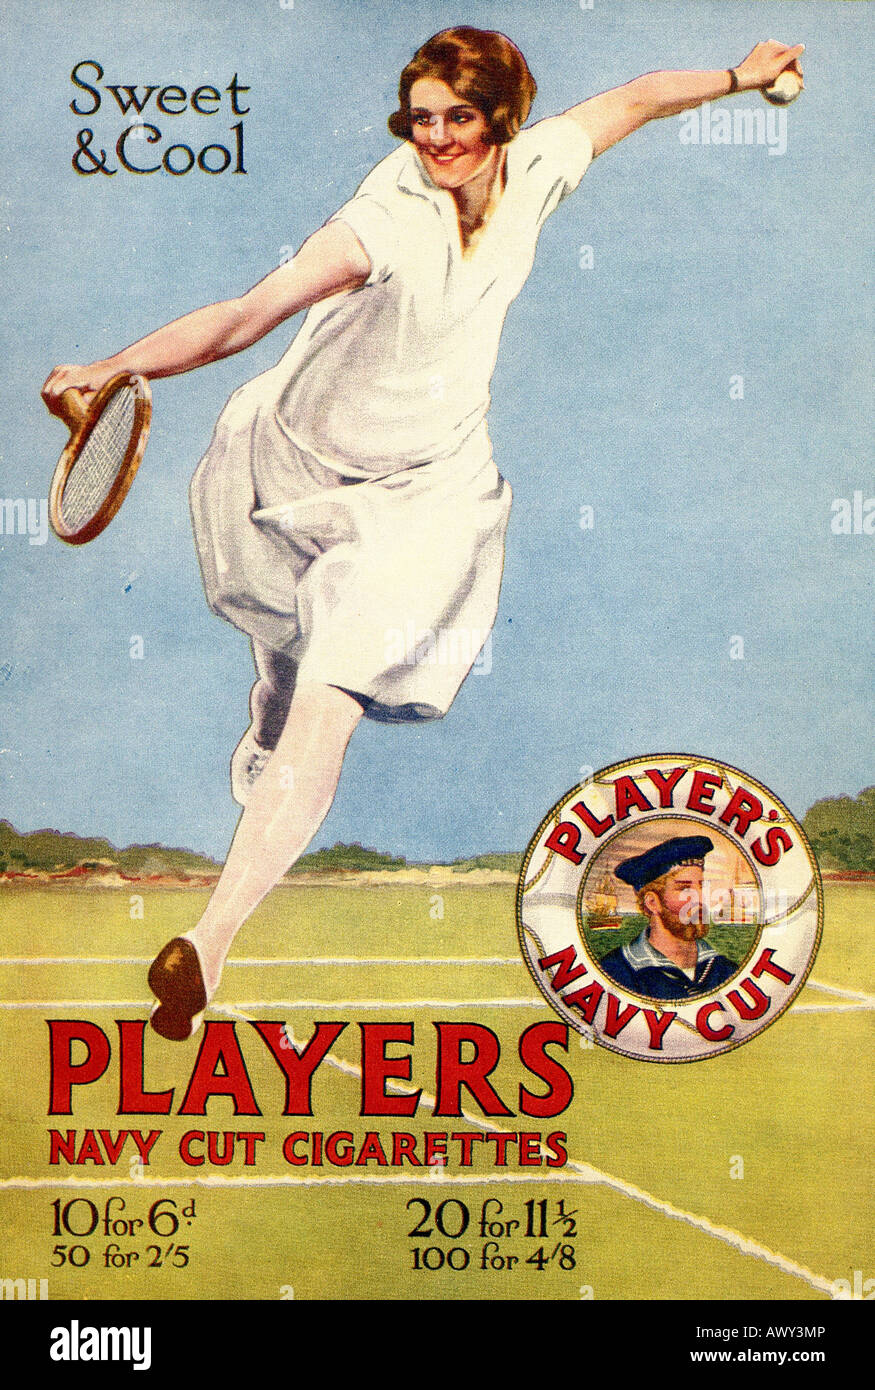 1920er Jahren Werbung für Spielers Navy Cut Zigaretten für nur zur redaktionellen Nutzung Stockfoto